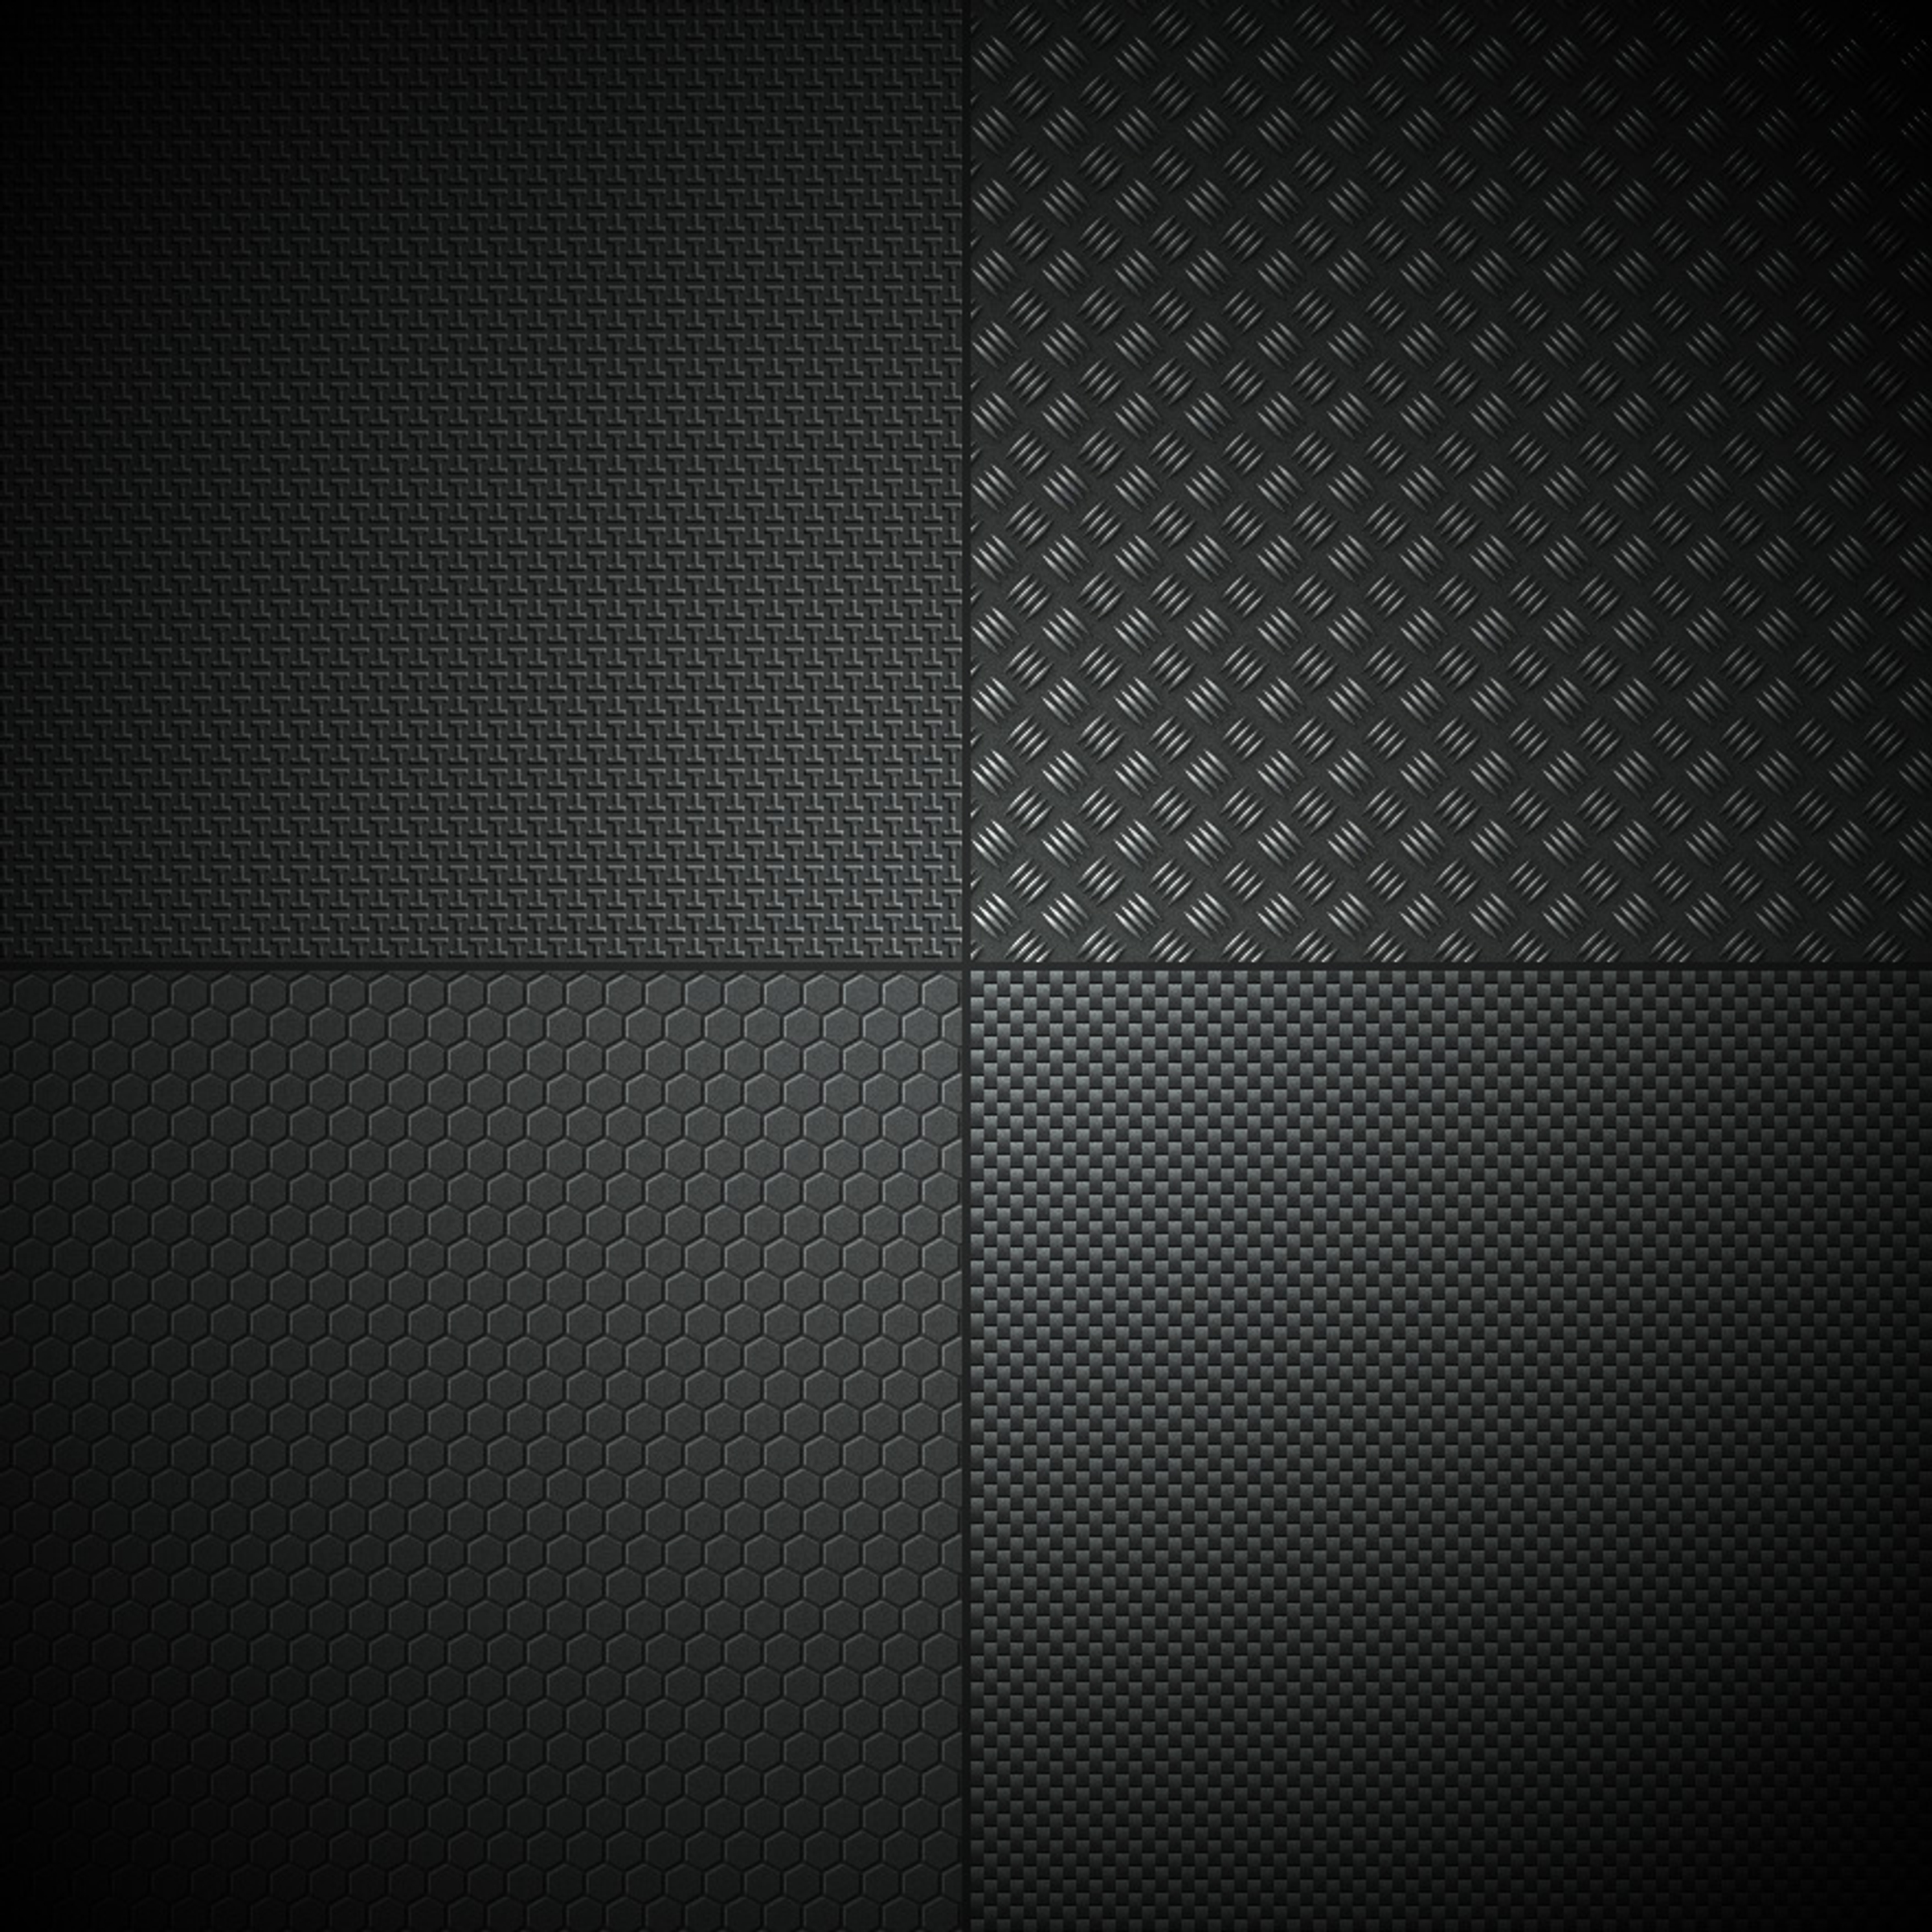 carbon fiber background